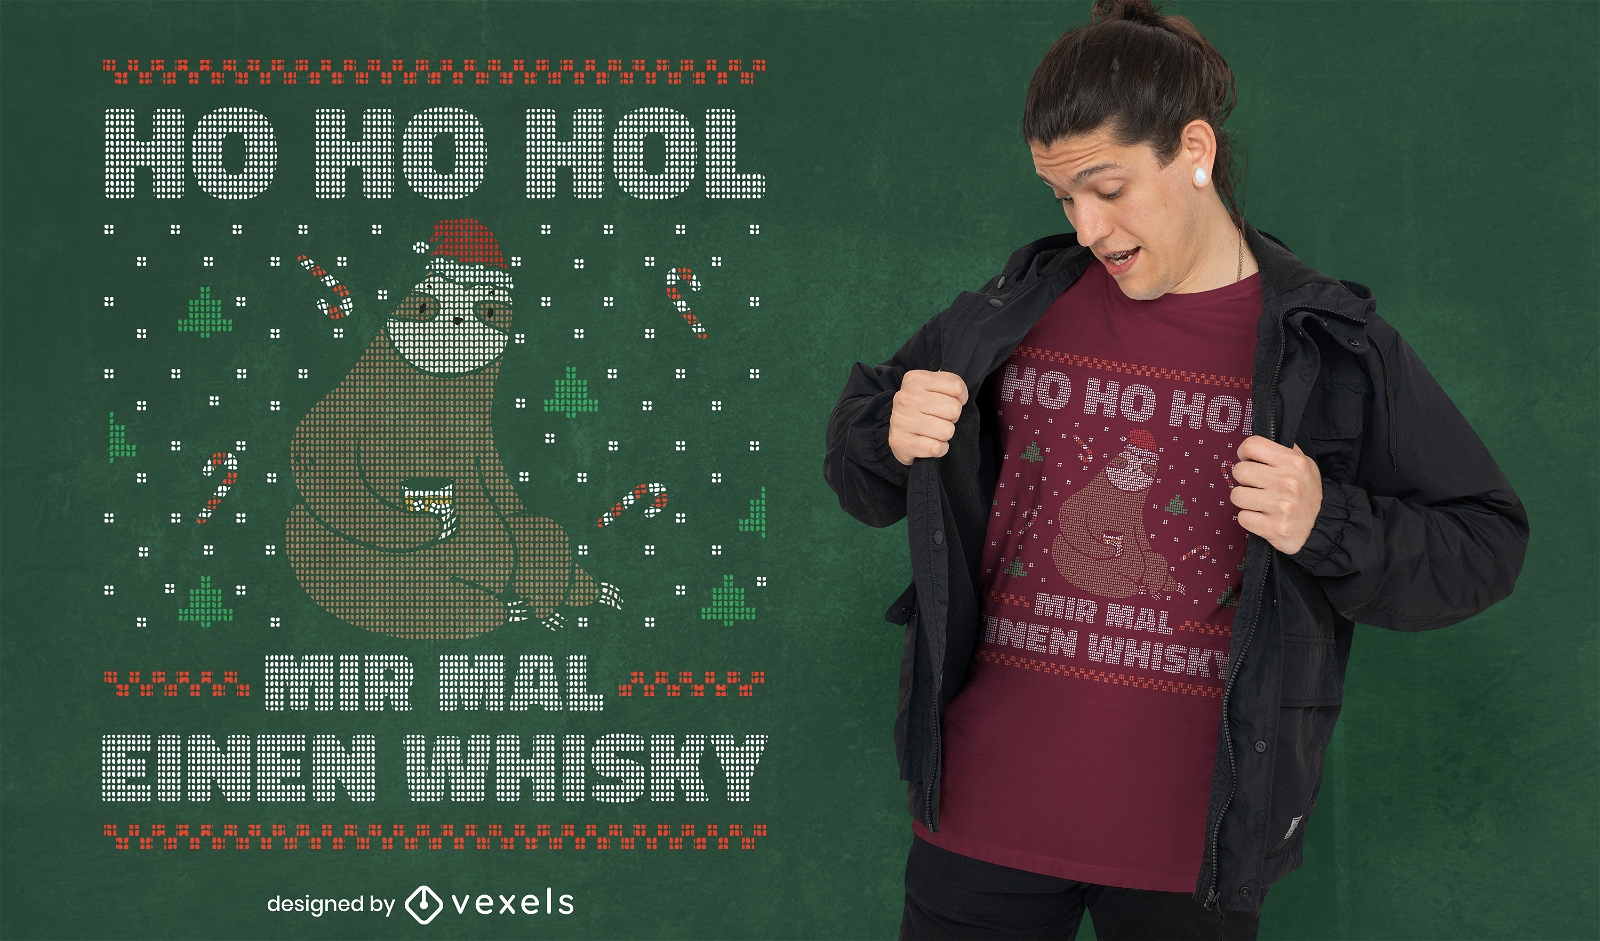 Dise?o de camiseta navide?a de perezoso whisky.